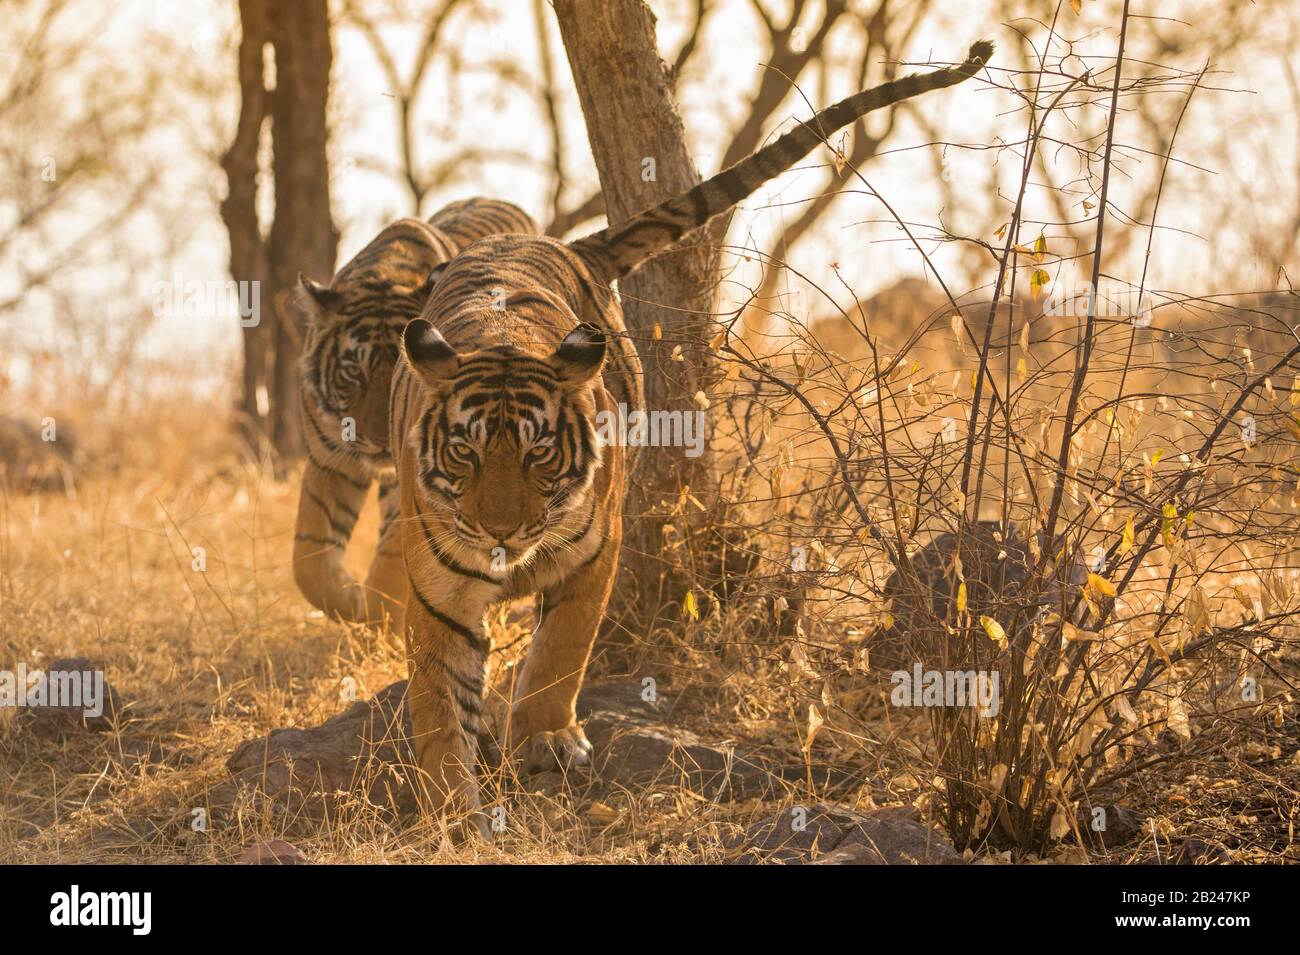 Tiger (Panthera tigris), Muttertier avec son cub, parc national de Ranthambore, Rajasthan, Inde Banque D'Images